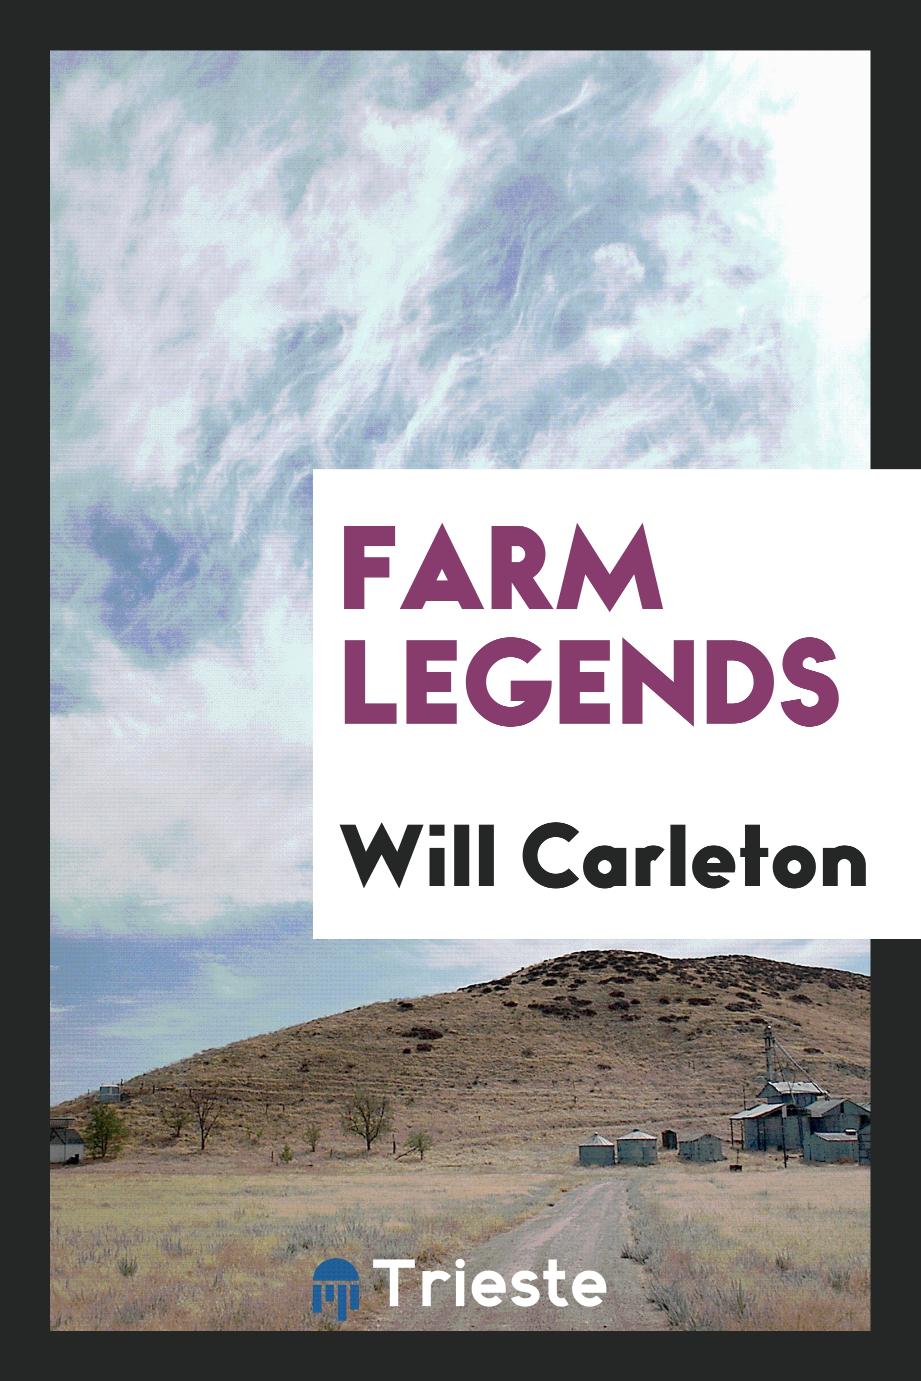 Farm legends